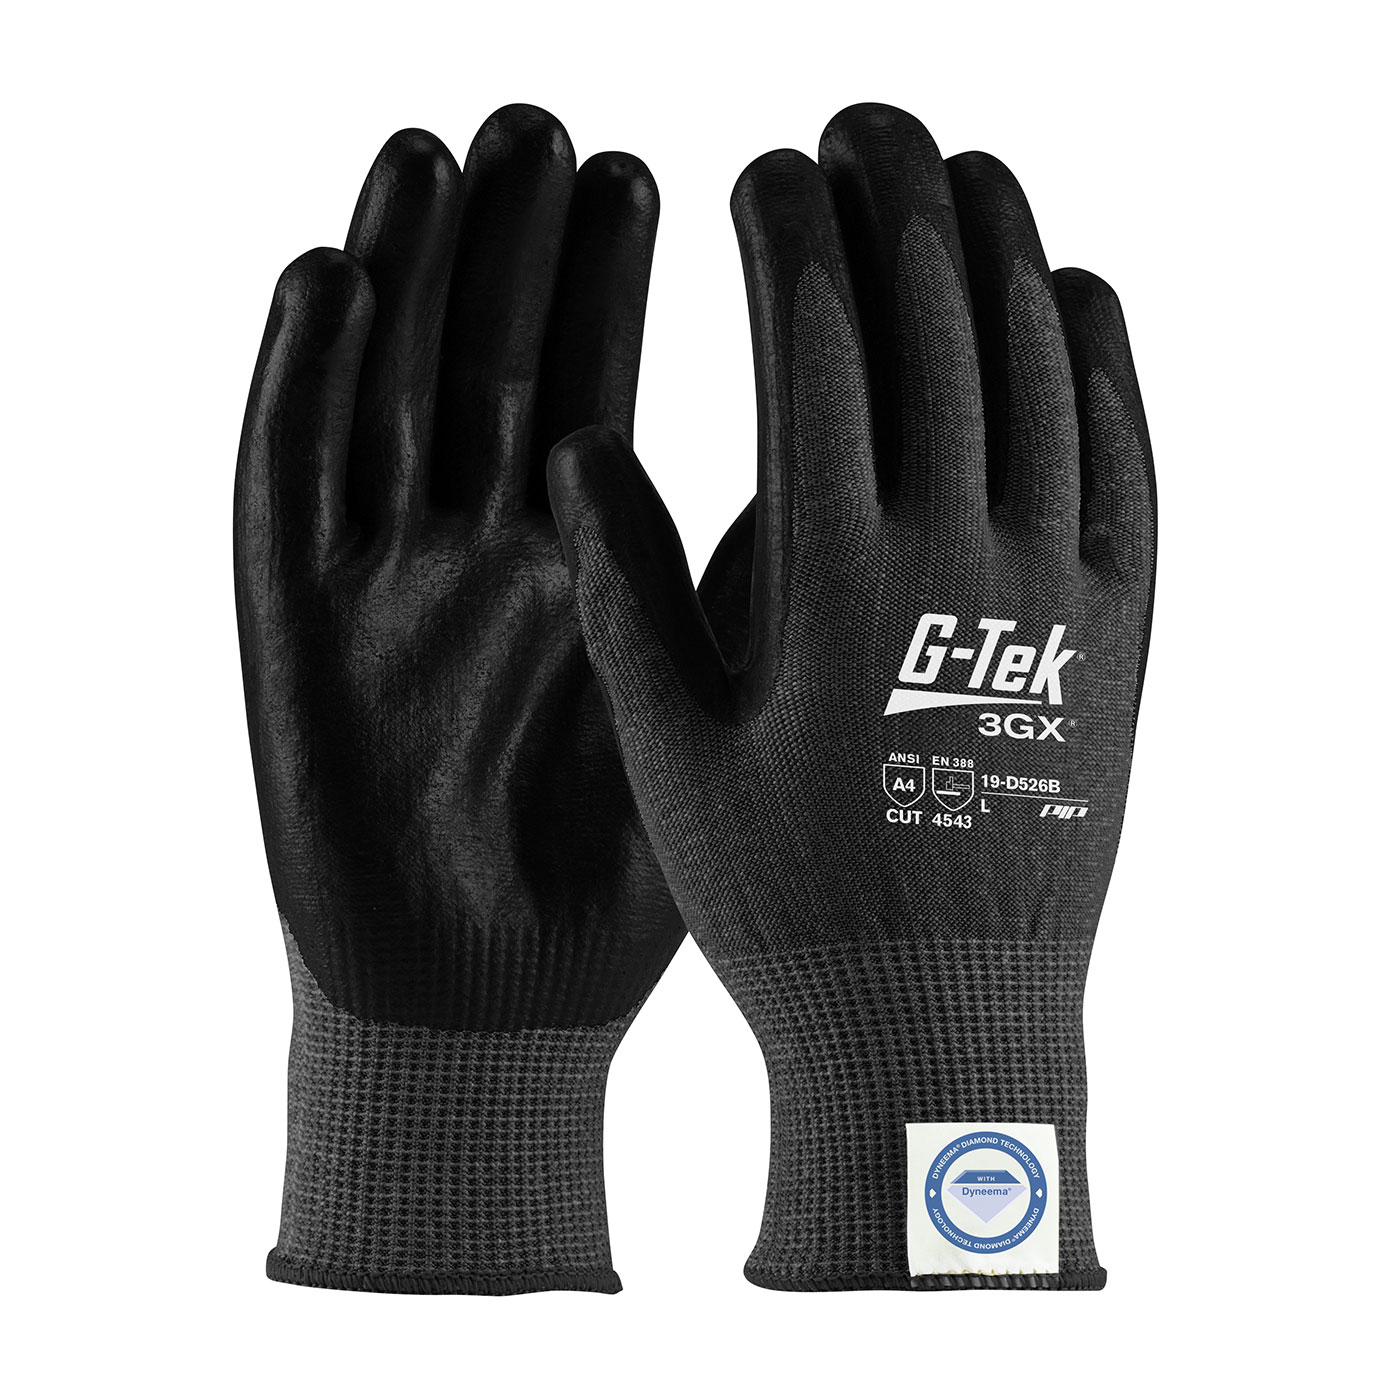 19-D526B PIP®G-Tek®3GX®黑色无缝针织Dyneema®钻石混合手套，涂有聚氨酯的手掌和手指平滑握把-触摸屏兼容